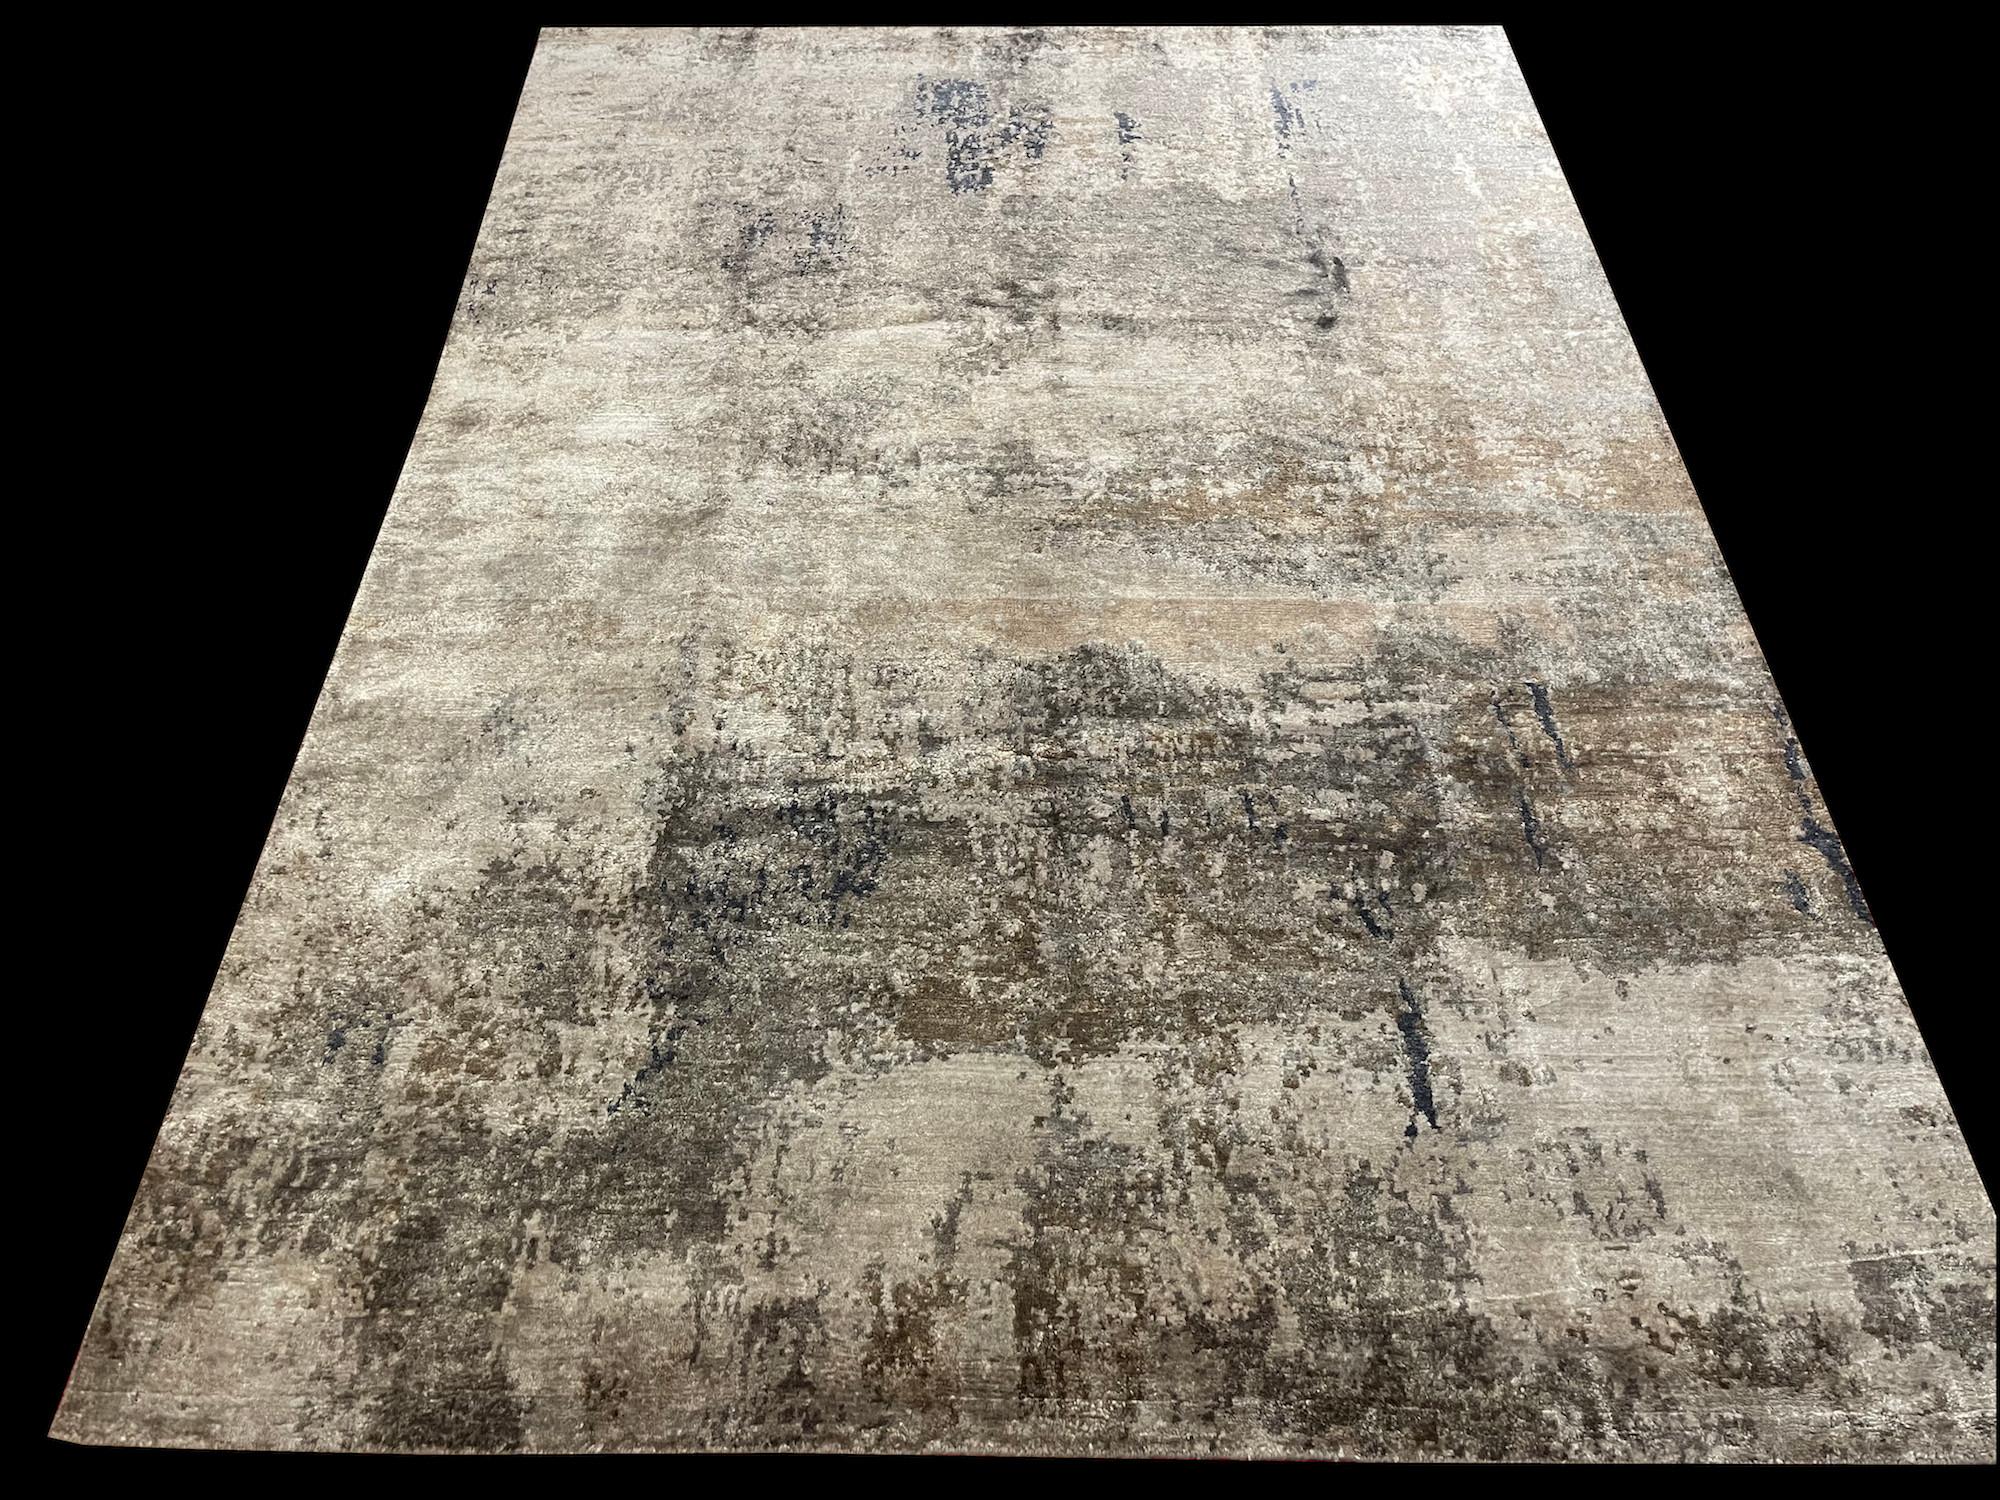 Master-Loom Teppich Nr.: JAY 8 abstraktes Muster. Das Format ist 170cm x 240cm, handgeknüpft und besteht aus einer einzigartigen  Mischung aus hochwertiger Wolle und Bambus-Seide, deren natürlicher Glanz moderne Farbtöne in silbergrau, beige,